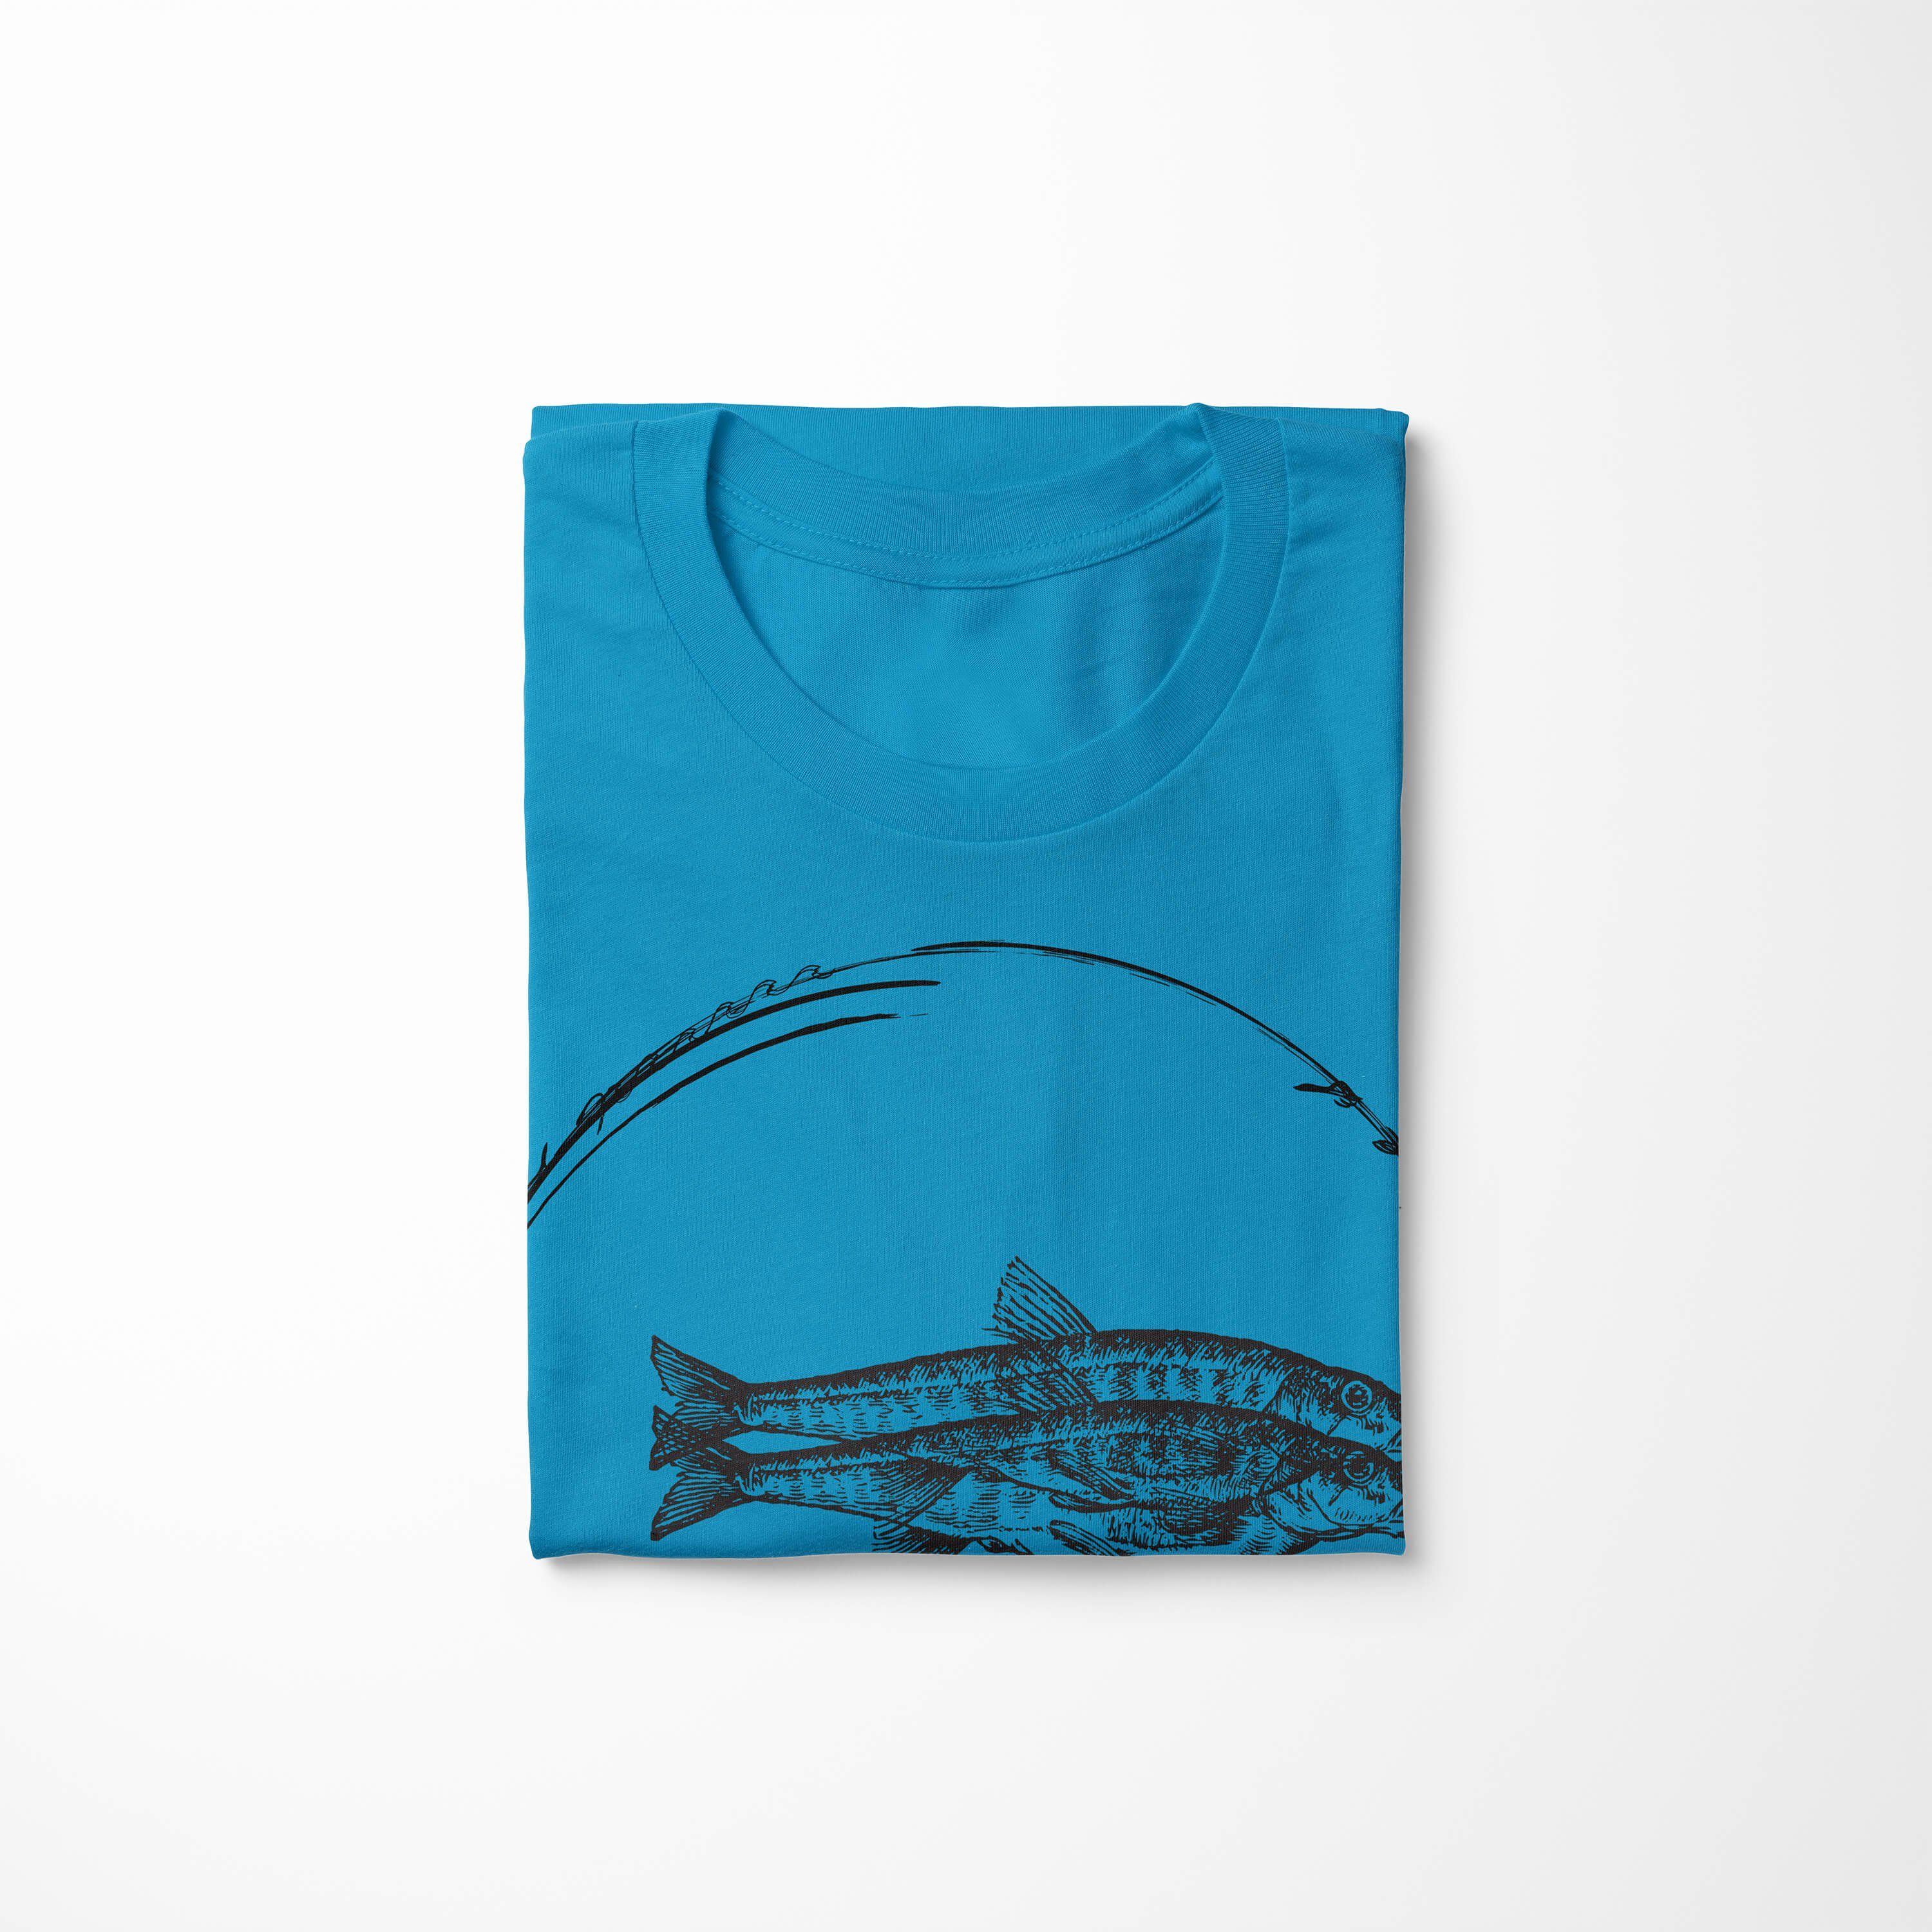 Fische und Struktur T-Shirt Serie: Sinus Art Tiefsee sportlicher Creatures, / Sea Atoll Schnitt - T-Shirt feine Sea 059